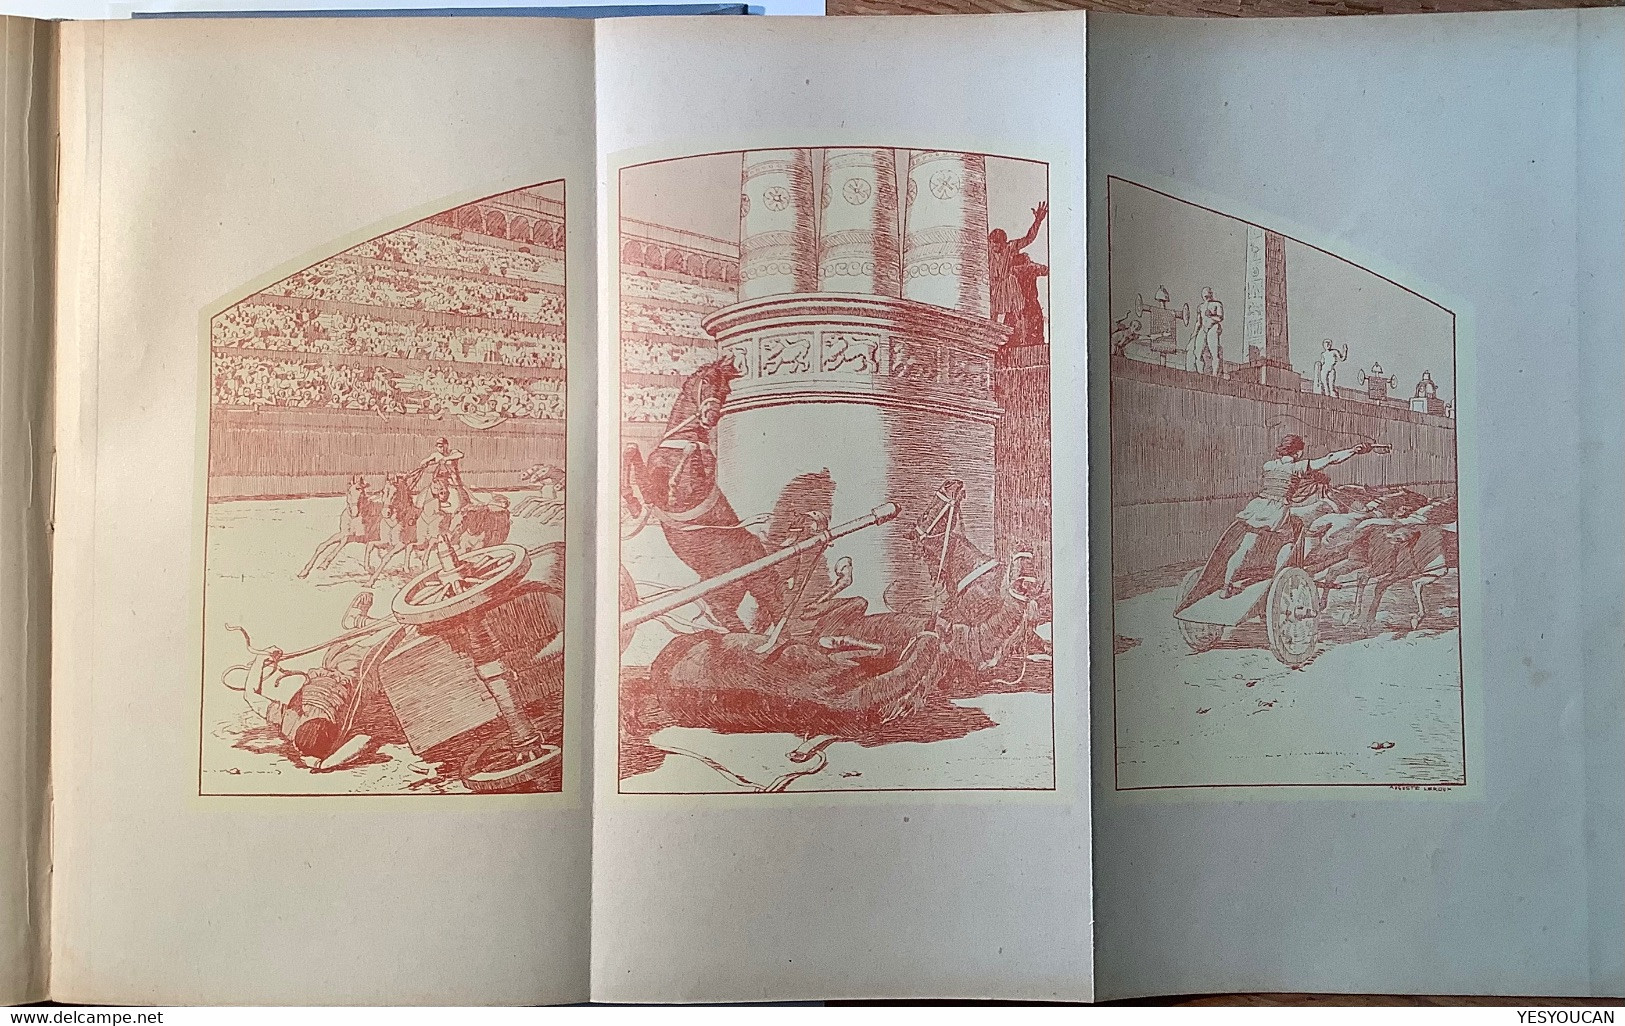 1927Ben-Hur le prince de Jérusalem LEWIS WALLACE Delagrave 2ed.illustration Auguste Leroux (livre Bible Romain Palestine